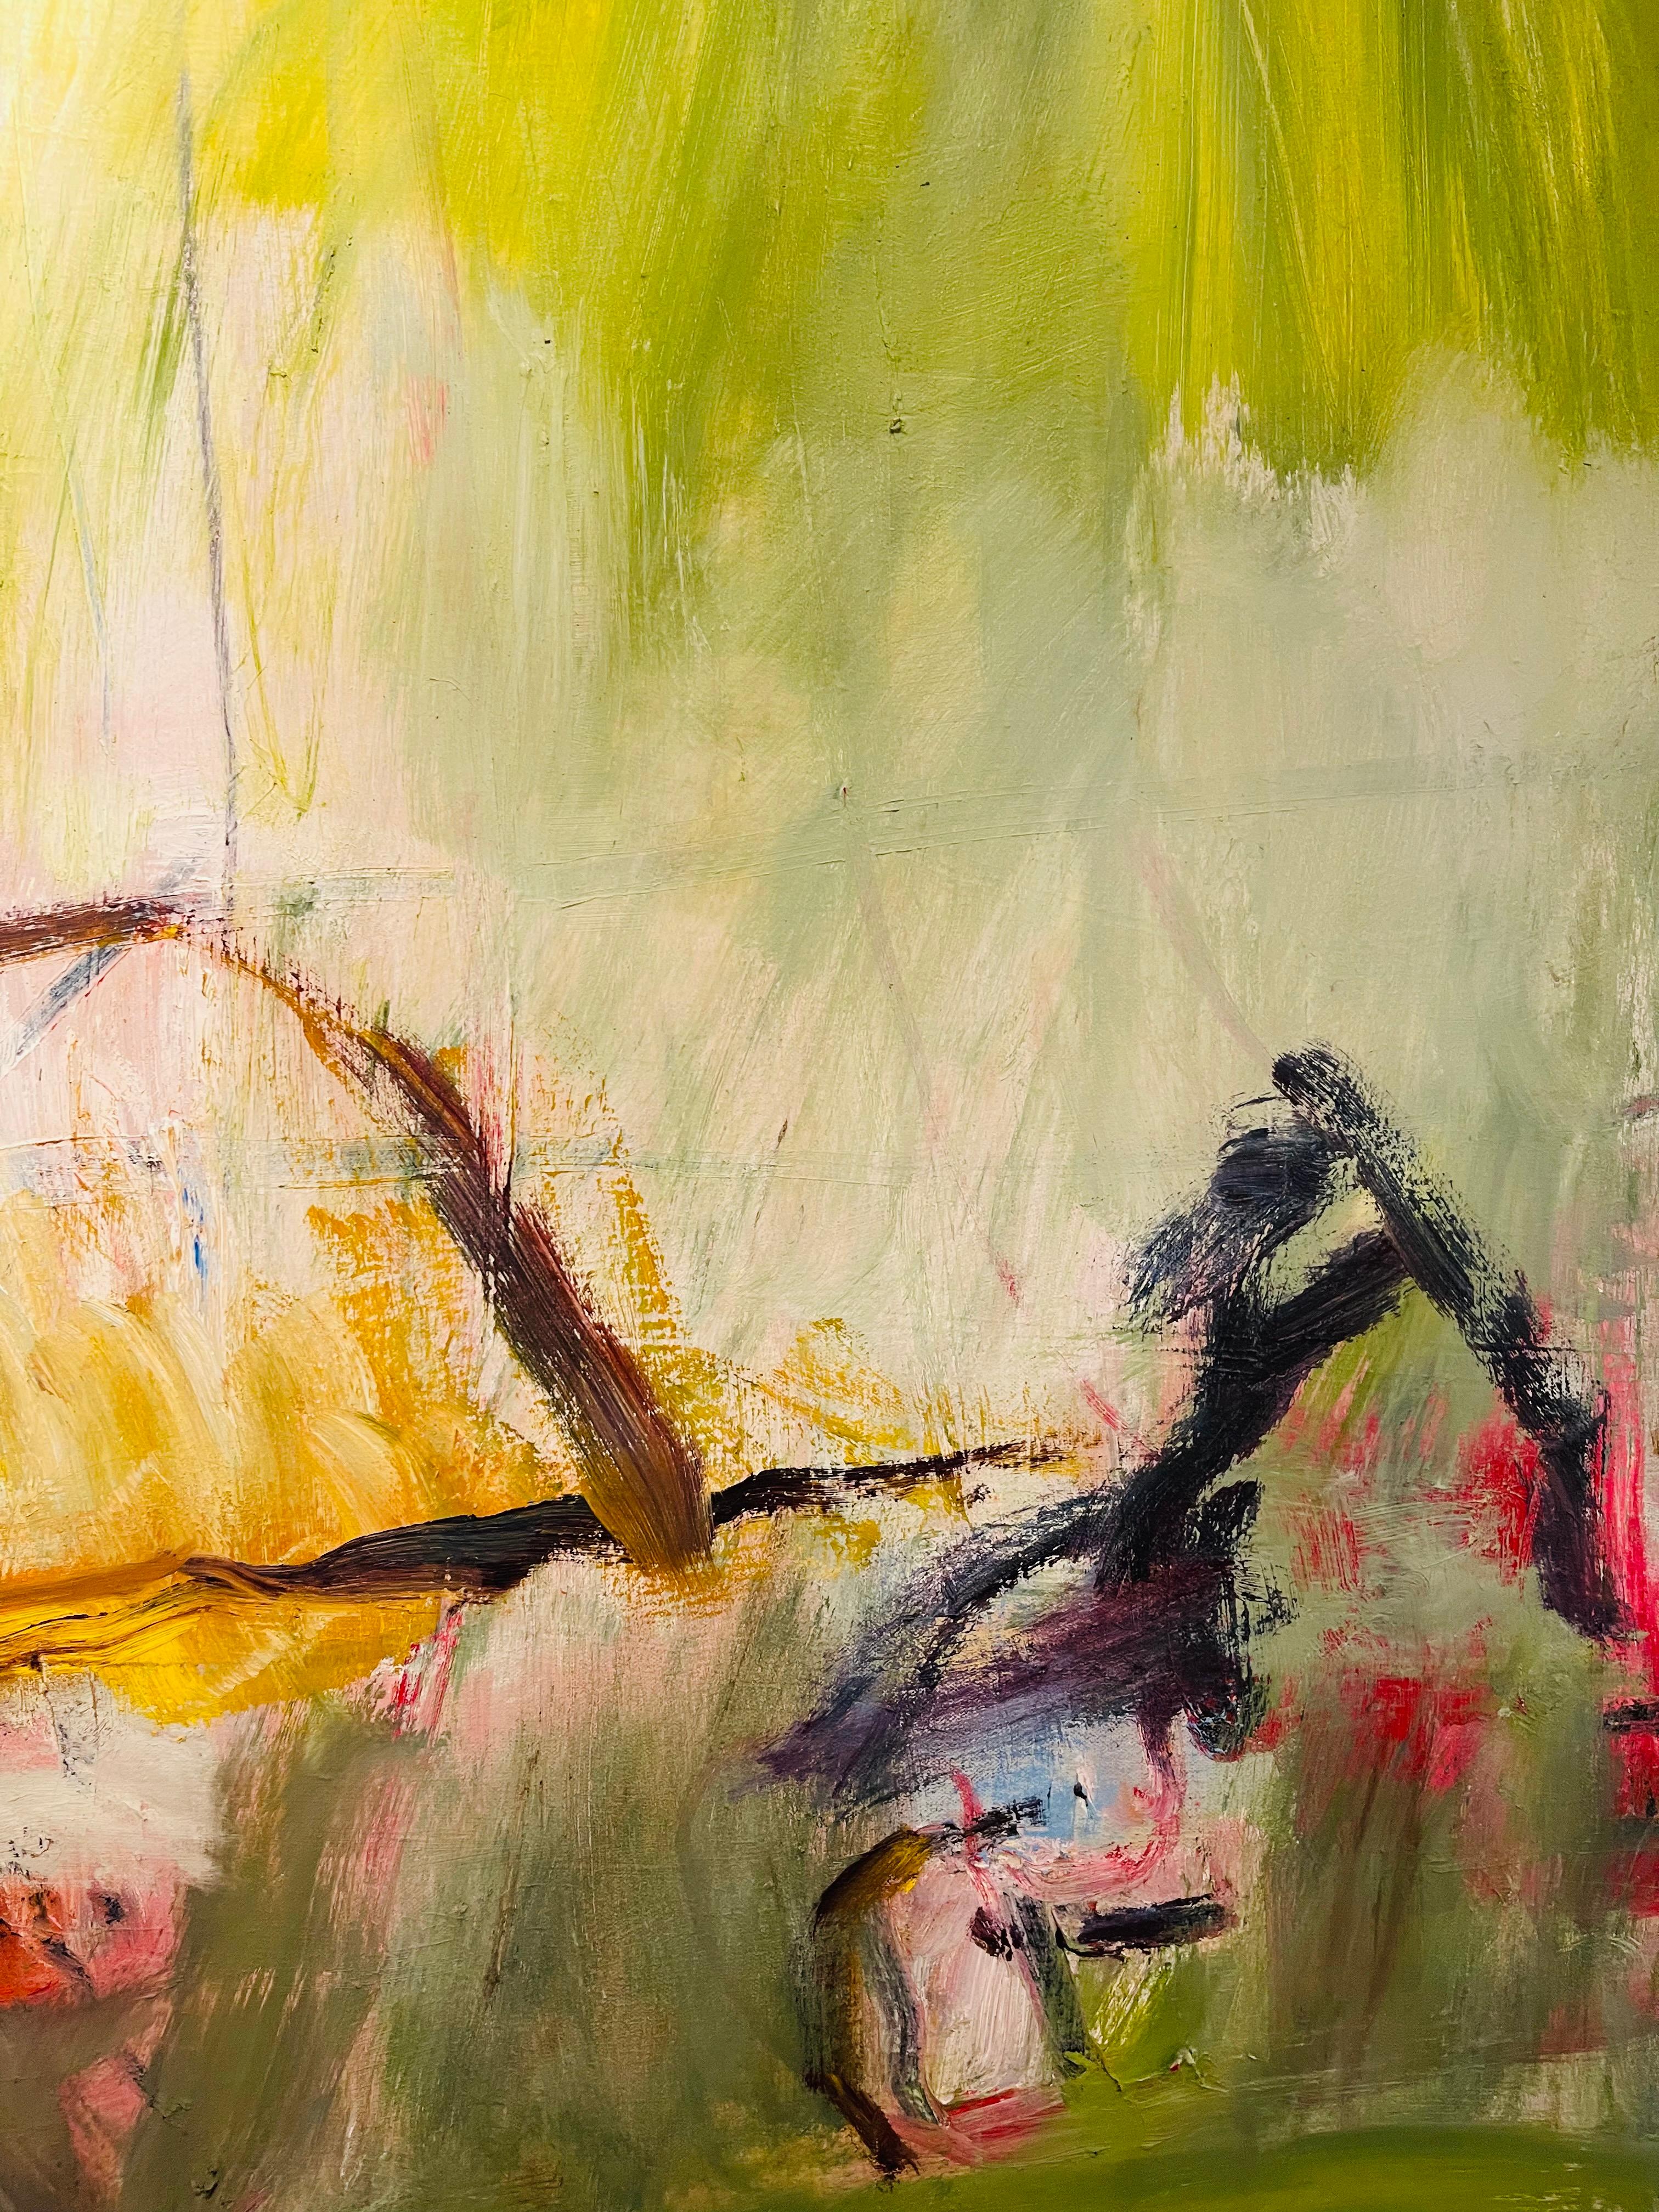 Les femmes dans l'expressionnisme abstrait : Œuvres d'art colorées inspirées par les couchers de soleil de l'artiste texane Winter Rusiloski.
Détails : 
Hiver Rusiloski
Cathédrale, 2016
Huile sur toile
48 x 45